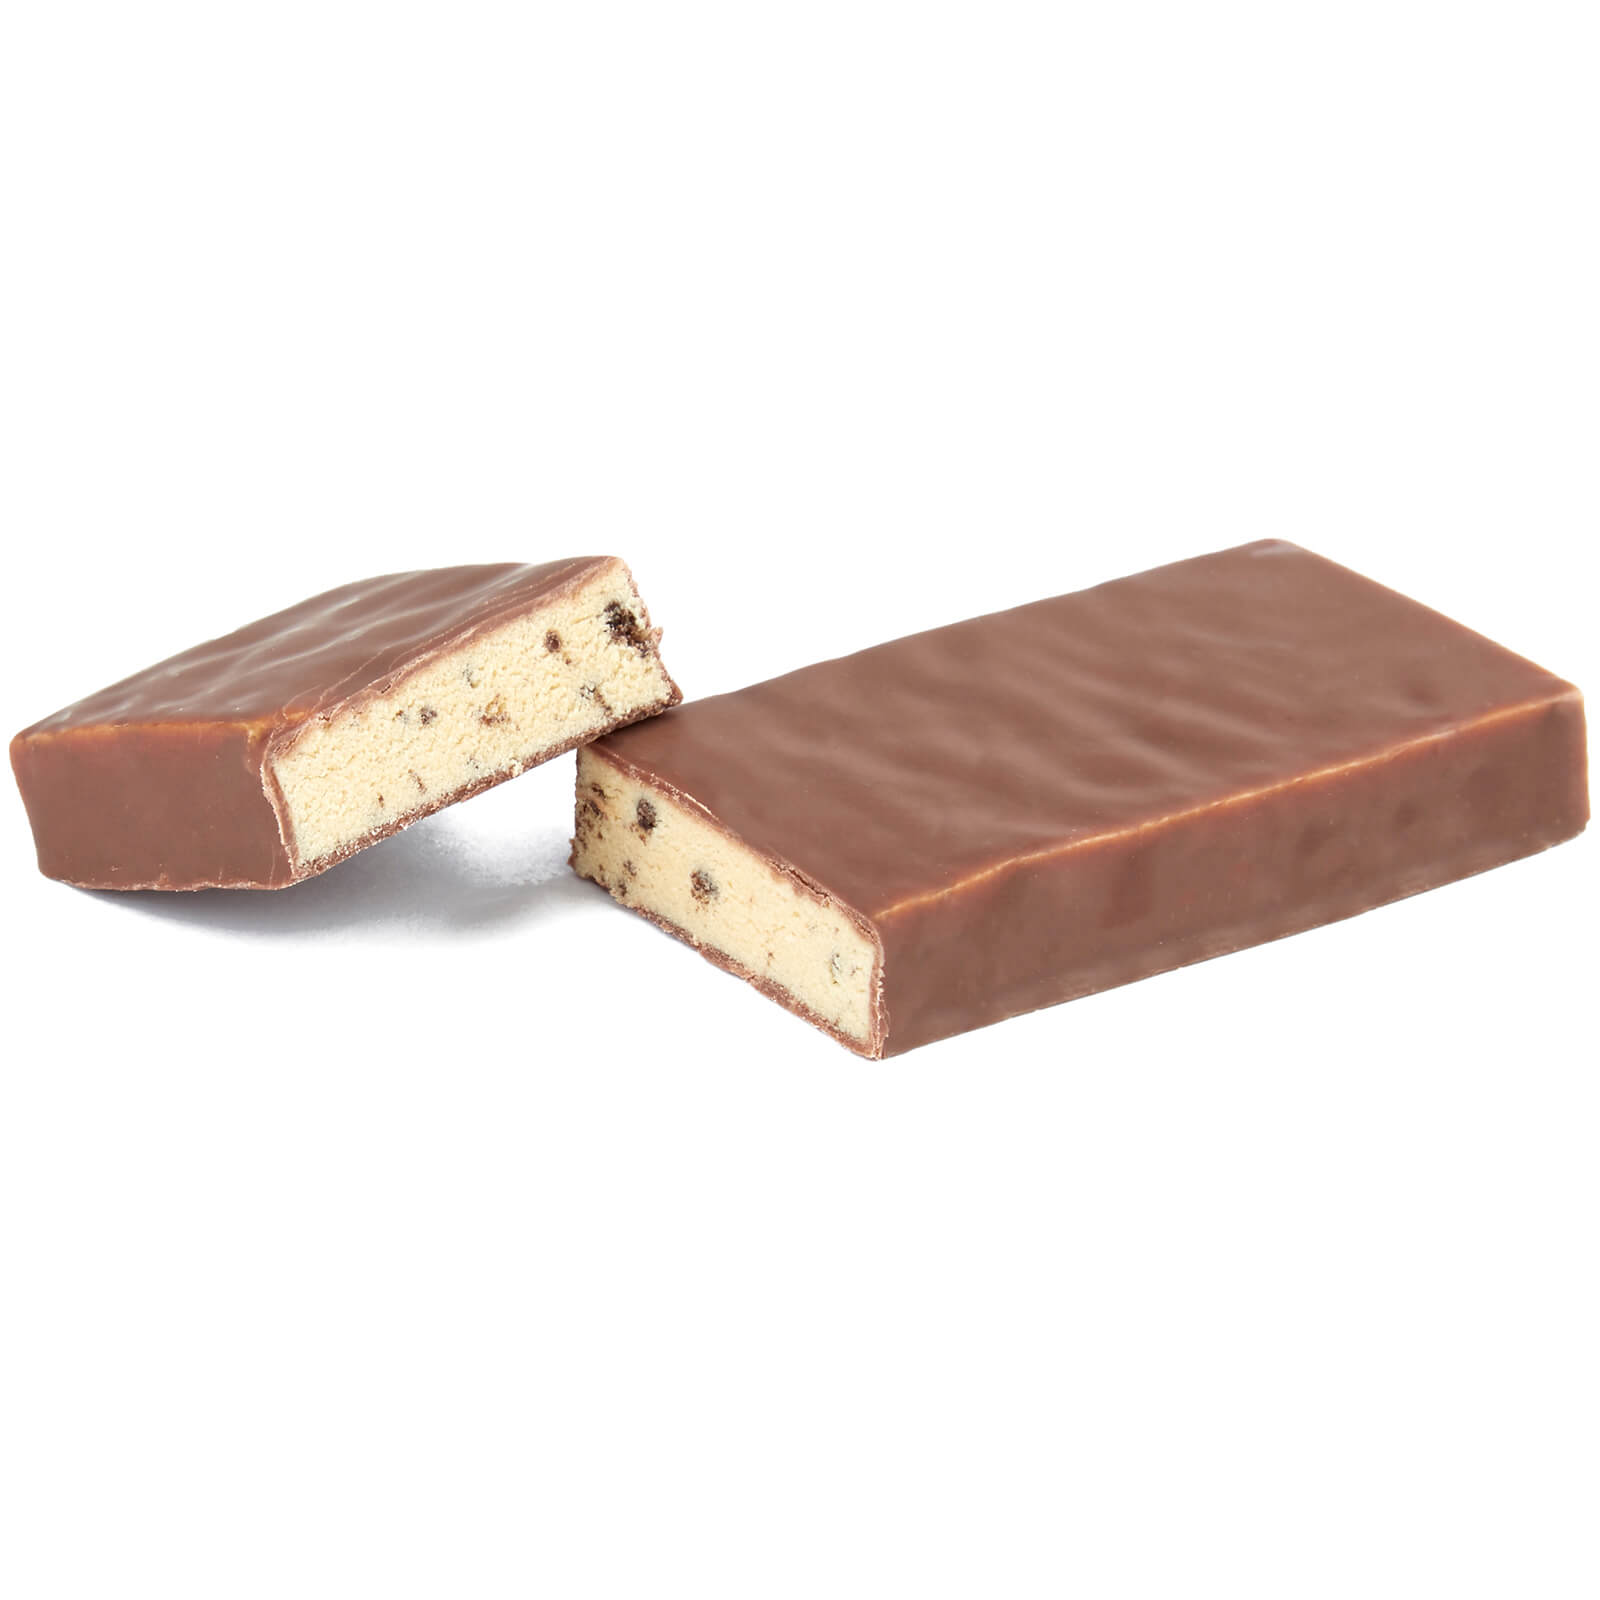 Barre protéinée allégée (Échantillon) - 45g - Chocolate and Cookie Dough